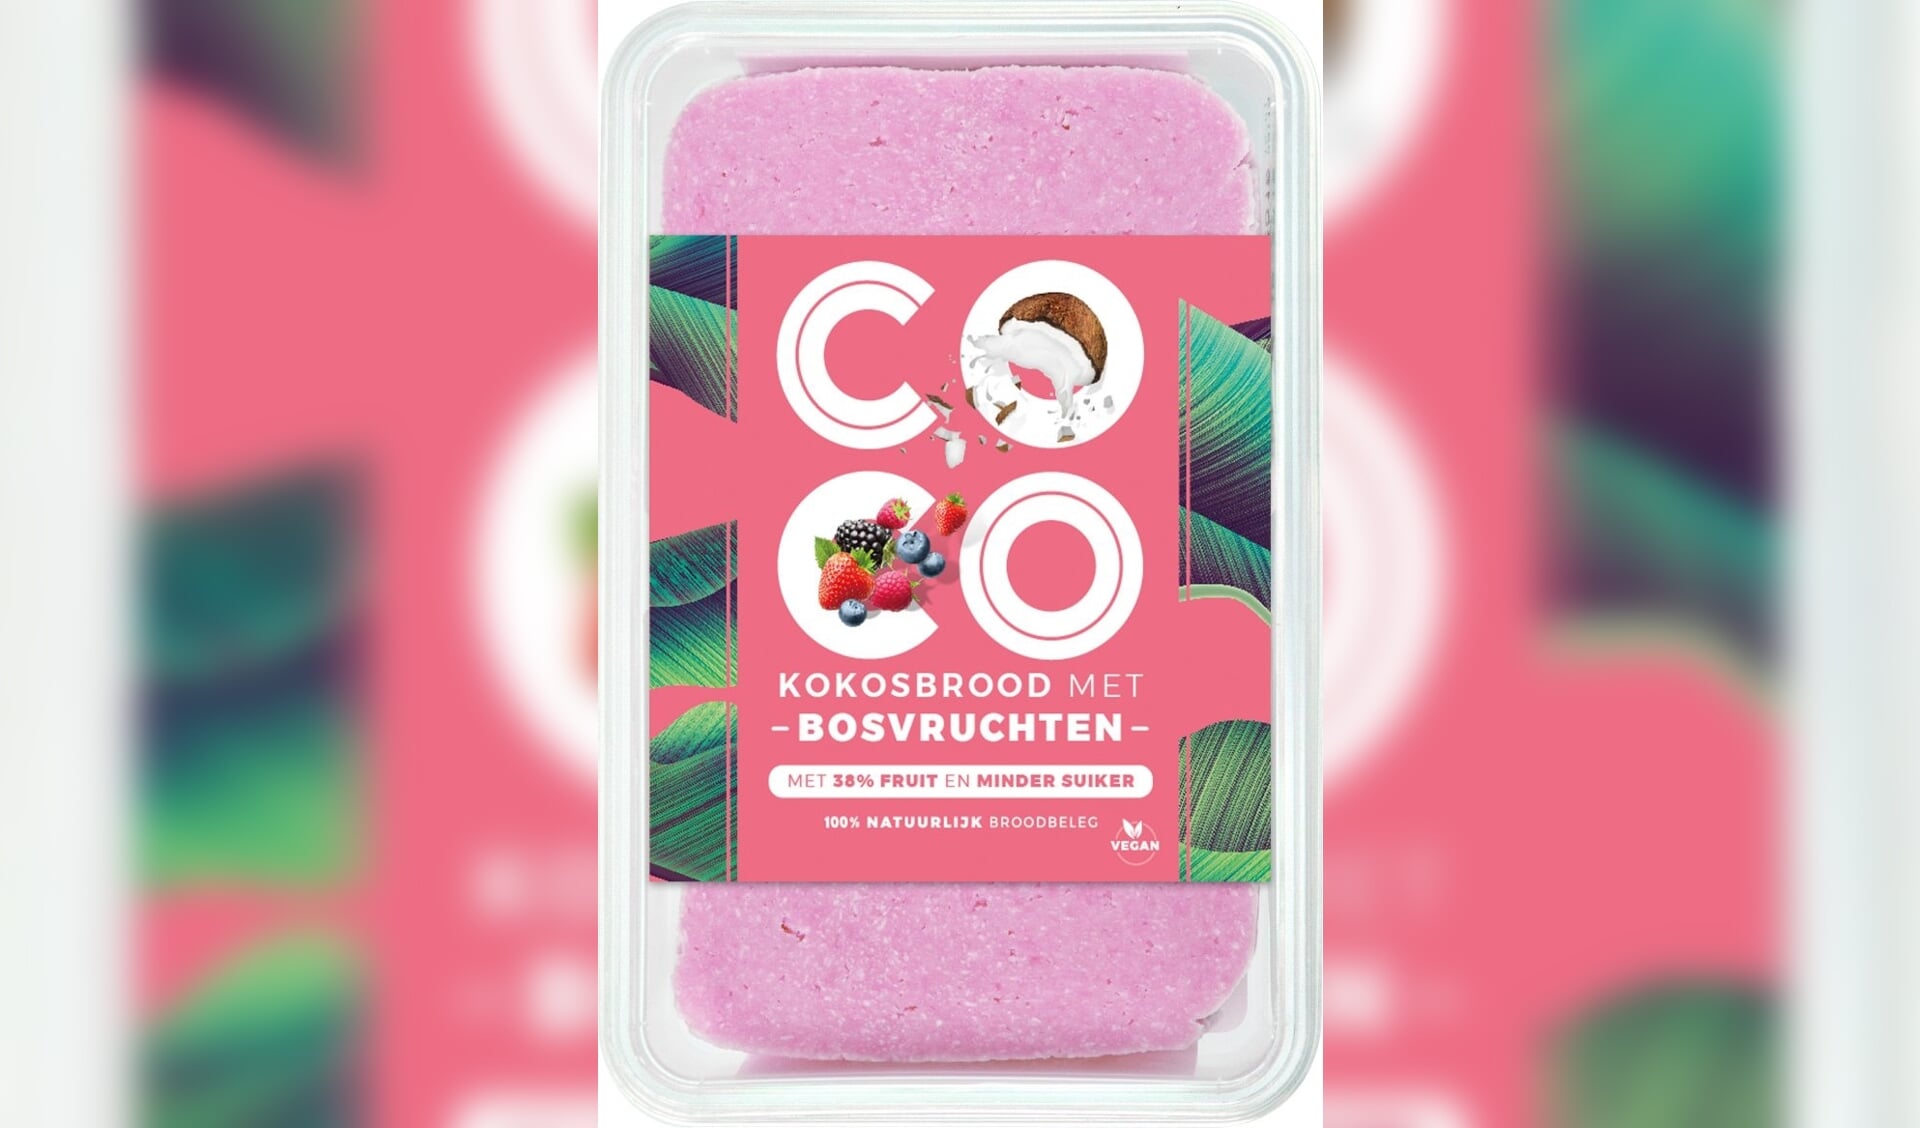 Nieuw en volledig plantaardig: CoCo kokosbrood